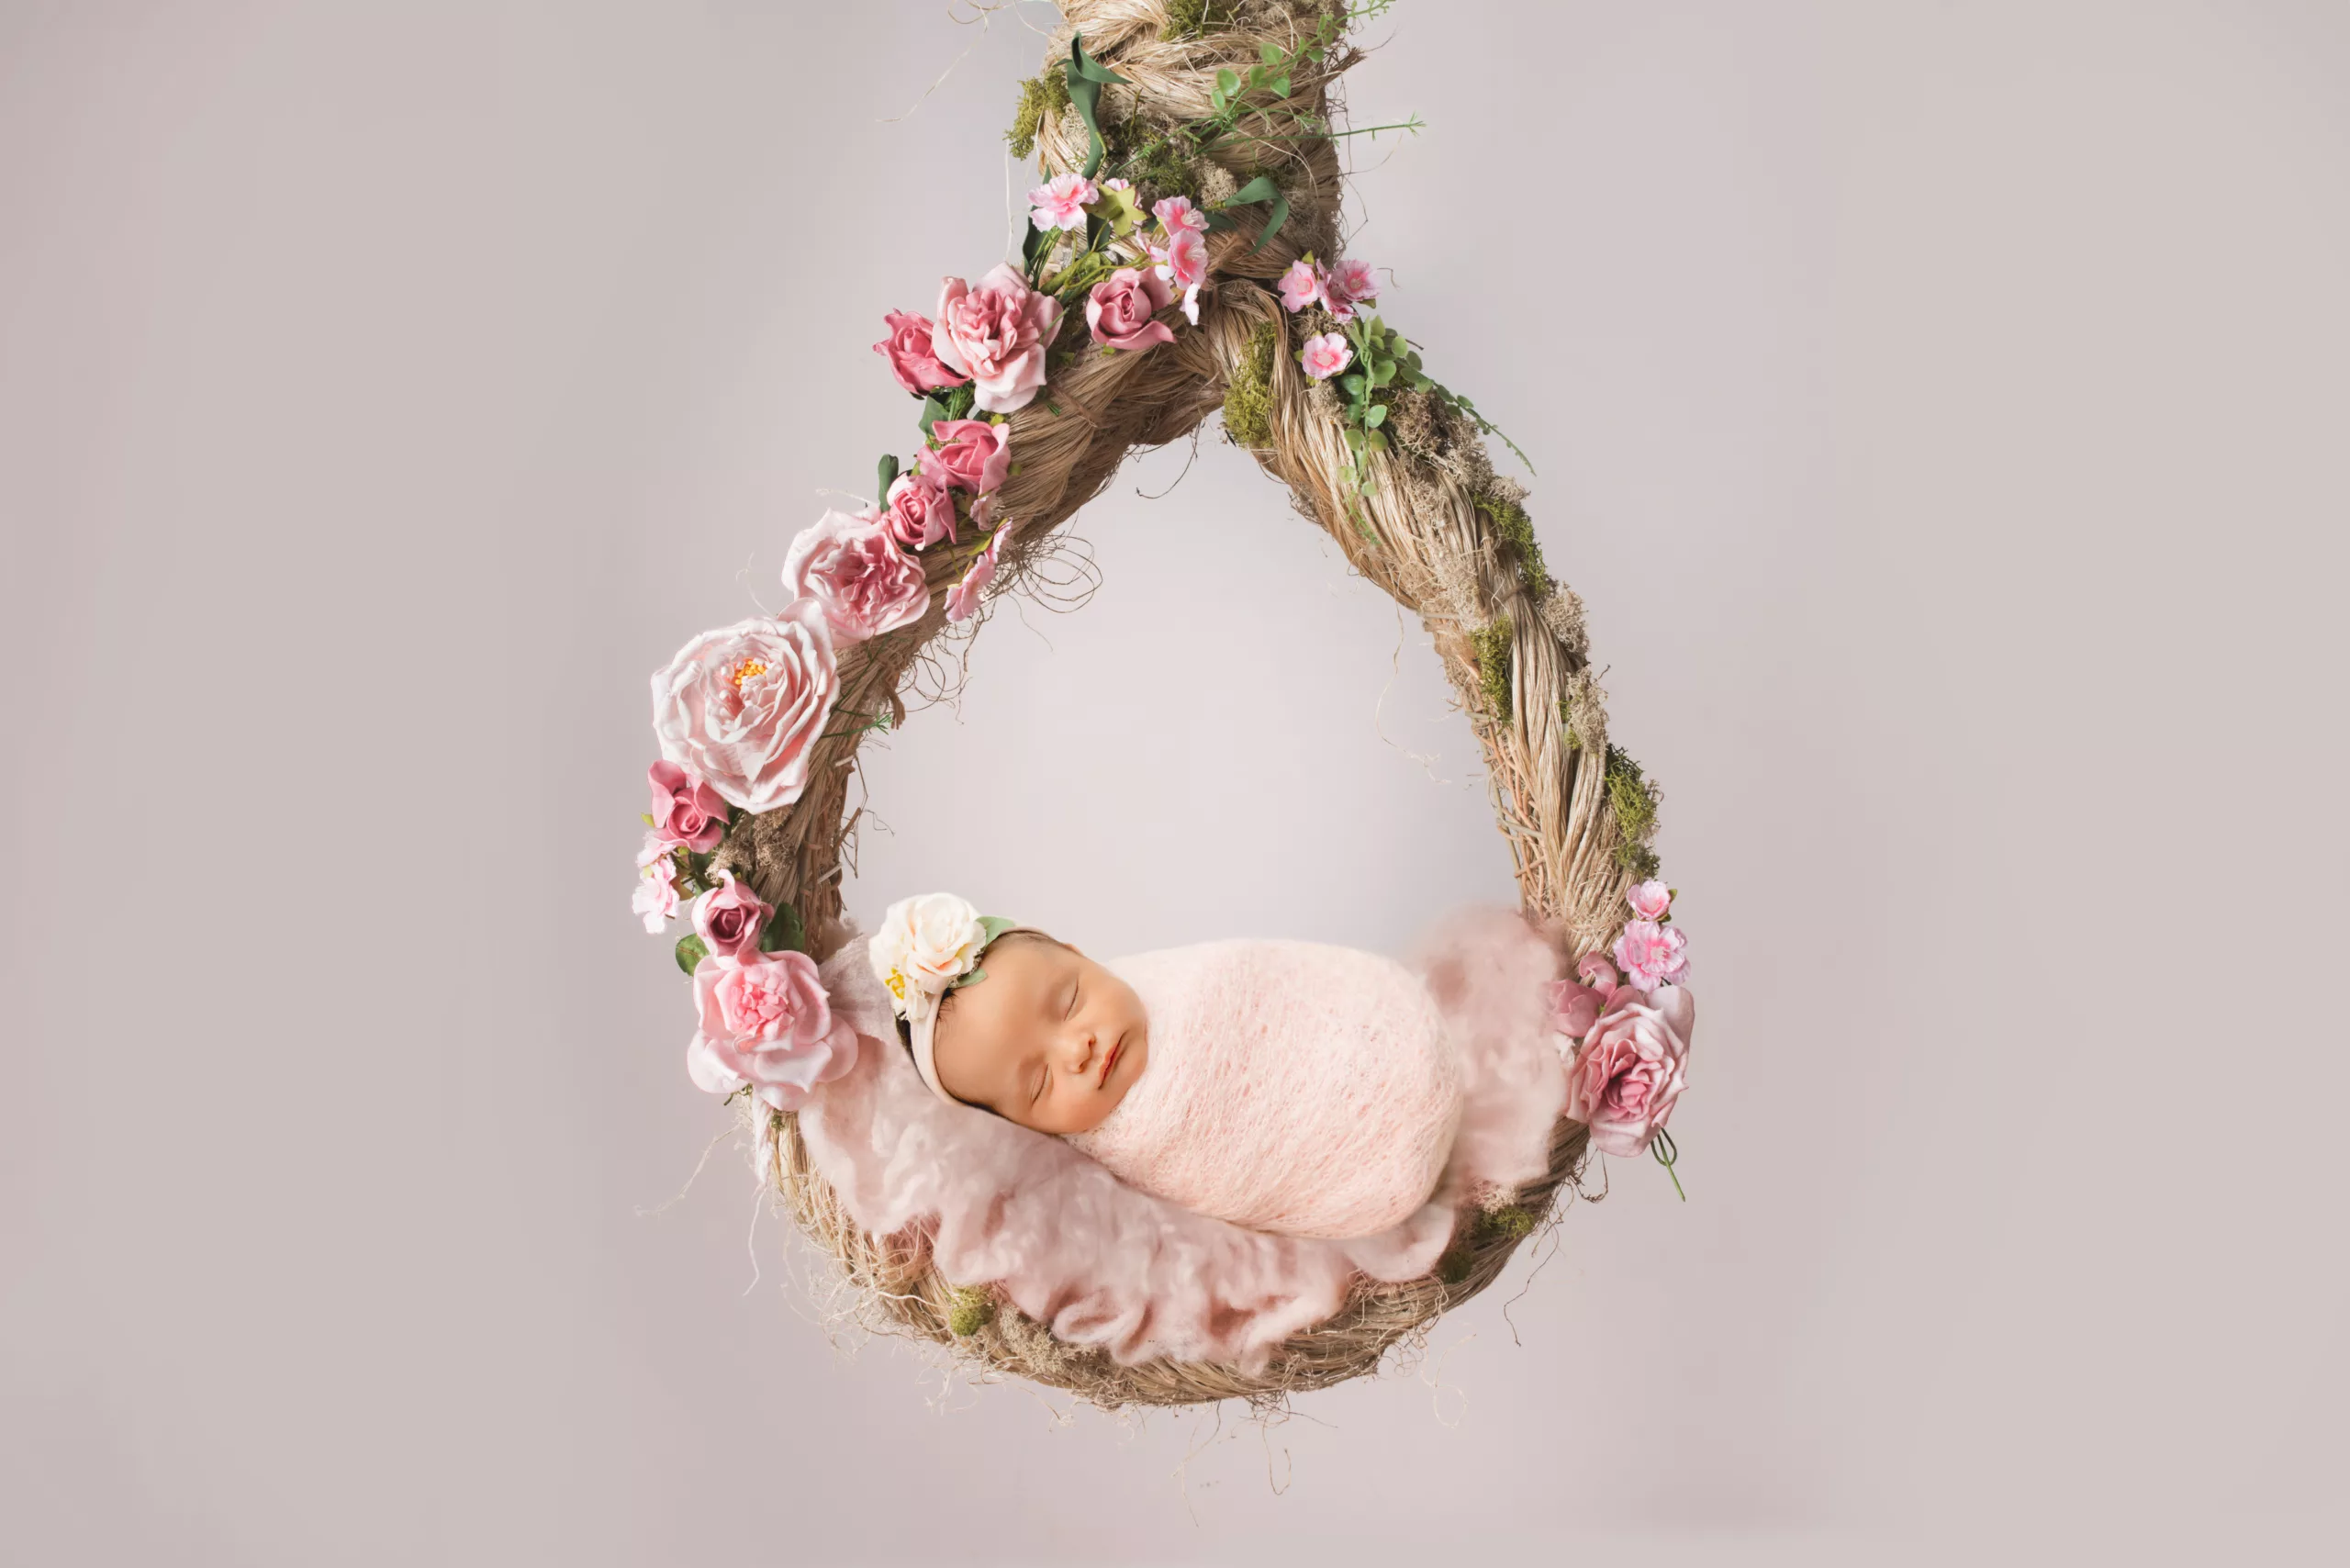 Orlando Newborn Photographer Baby Girl Photo studio 32 pink white hanging tree branch with flowers baby sleeping